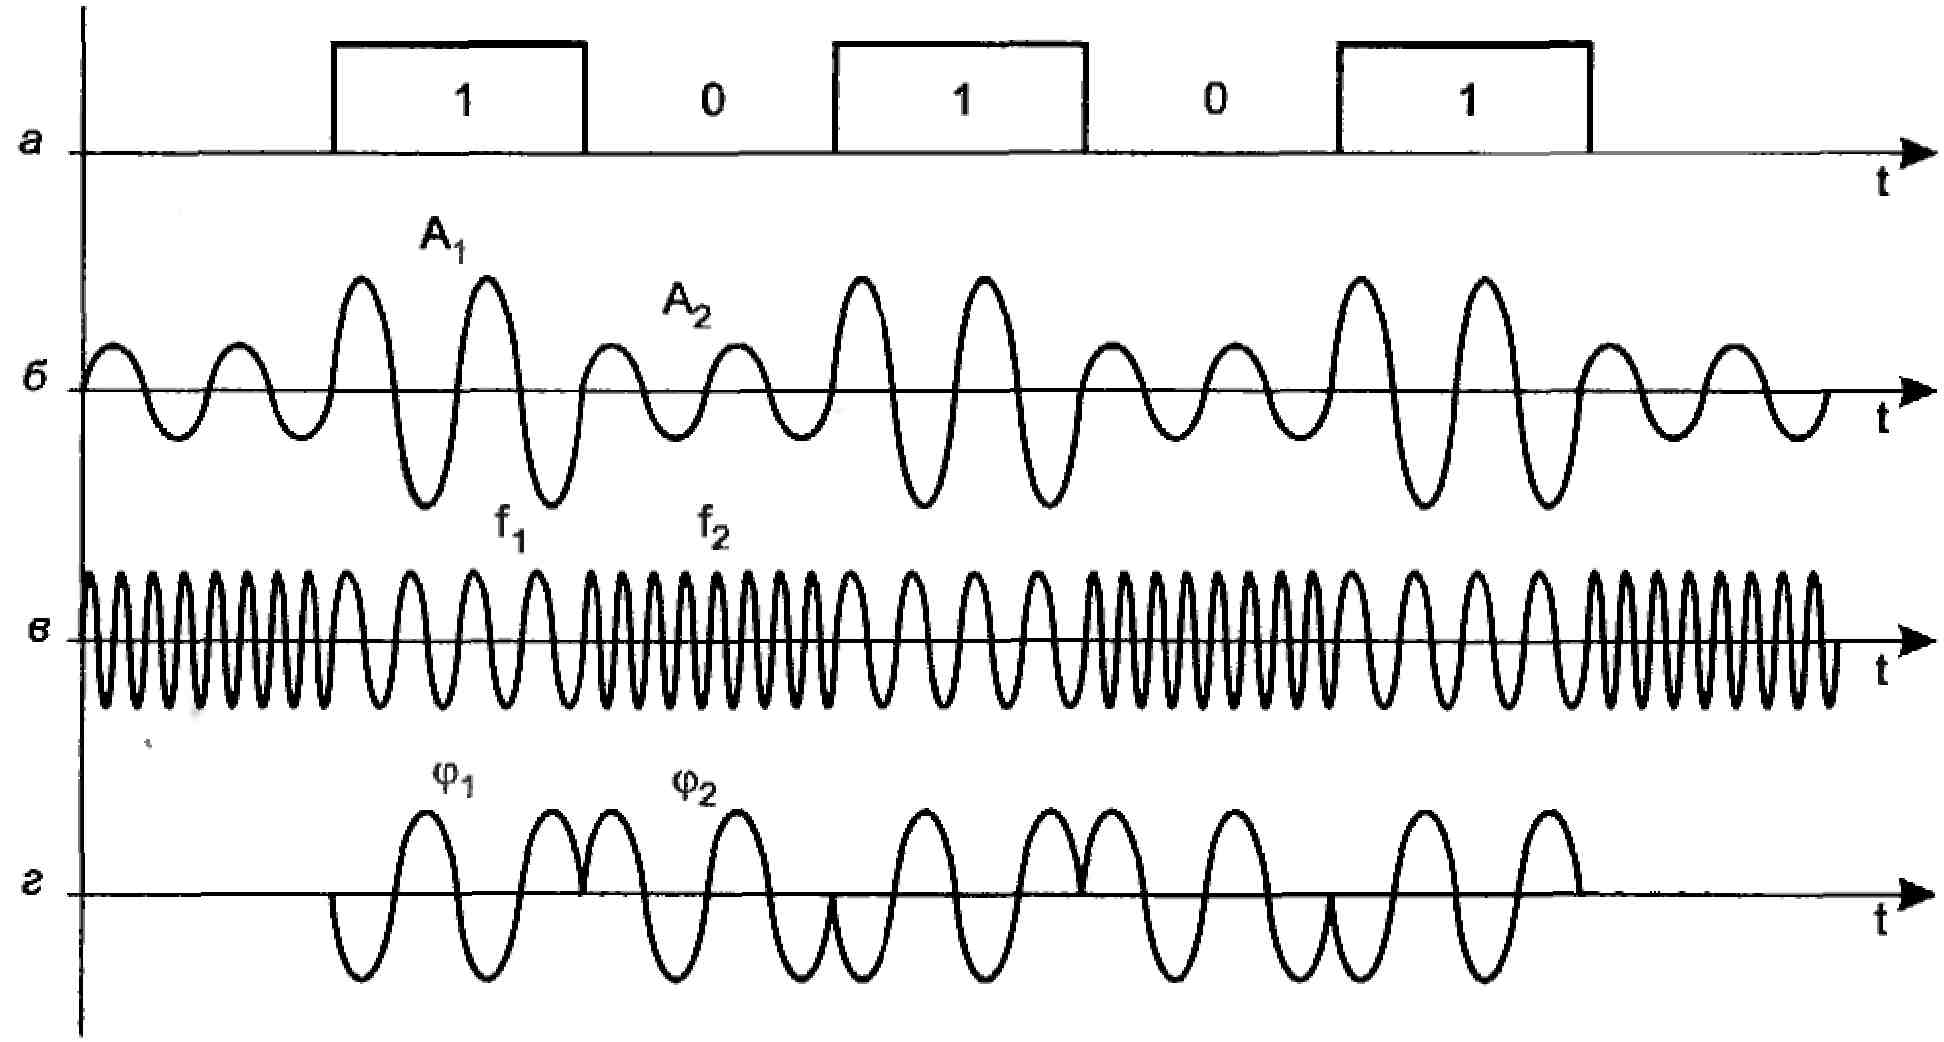 Дискретная передача сигналов. Амплитудная модуляция цифрового сигнала. Схема модуляция амплитудная фазовая частотная. Временная диаграмма фазомодулированного сигнала. Виды модуляции сигналов.